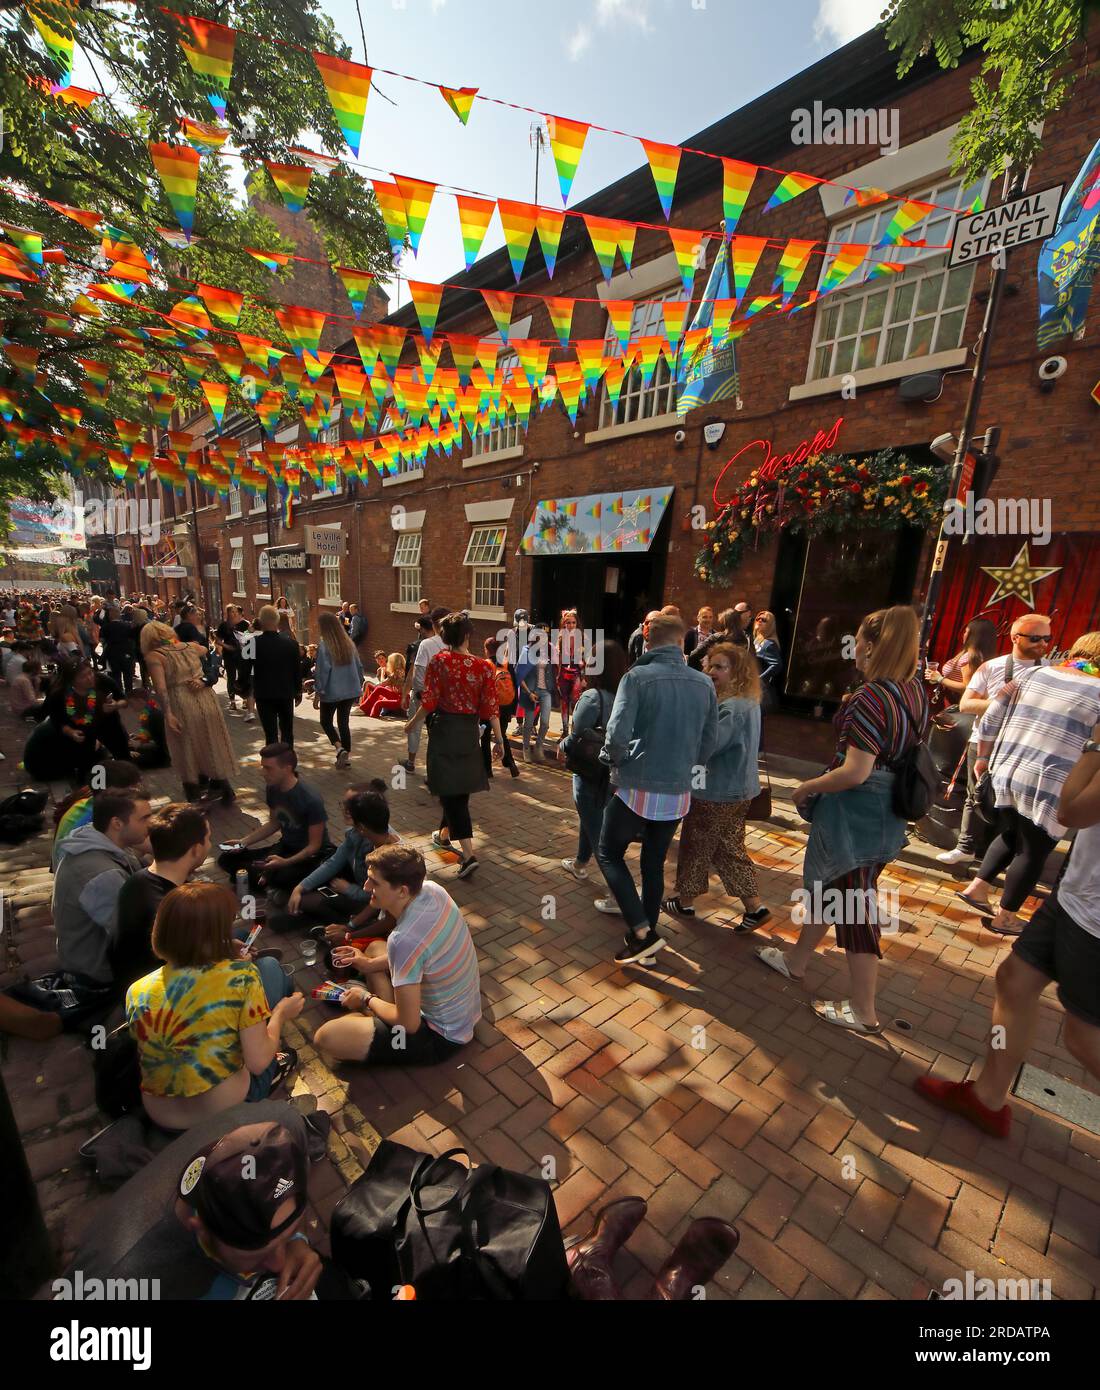 Profiter du Manchester Pride Festival, vacances bancaires au mois d'août au gay Village, Canal St, Manchester, Angleterre, Royaume-Uni, M1 6JB Banque D'Images